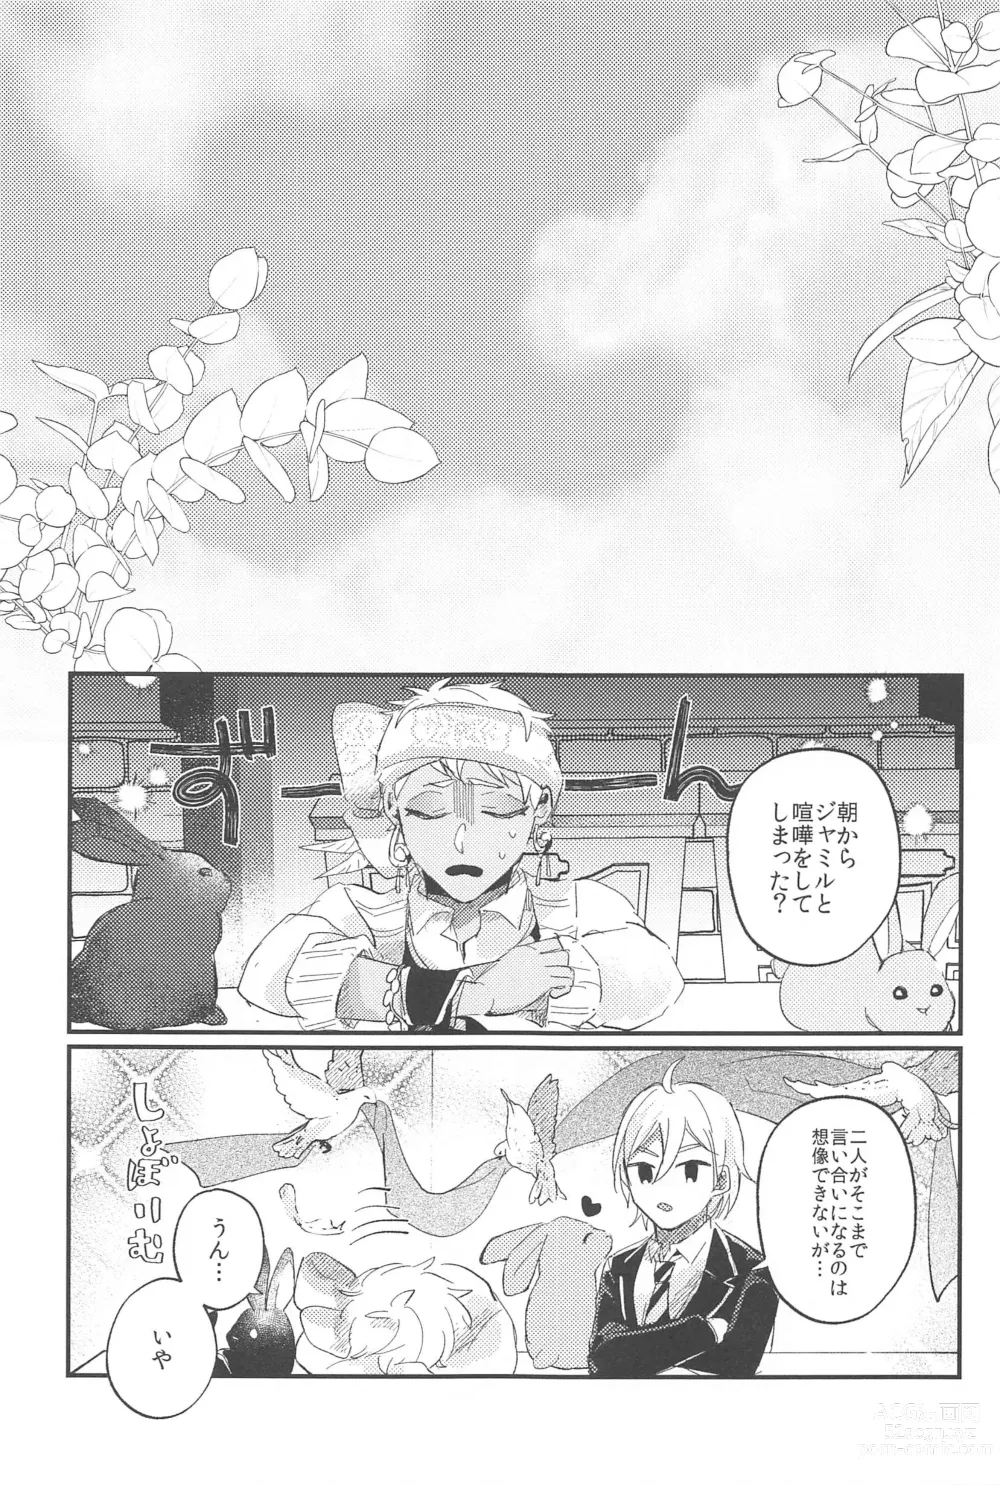 Page 27 of doujinshi Kantan dakara Muzukashii